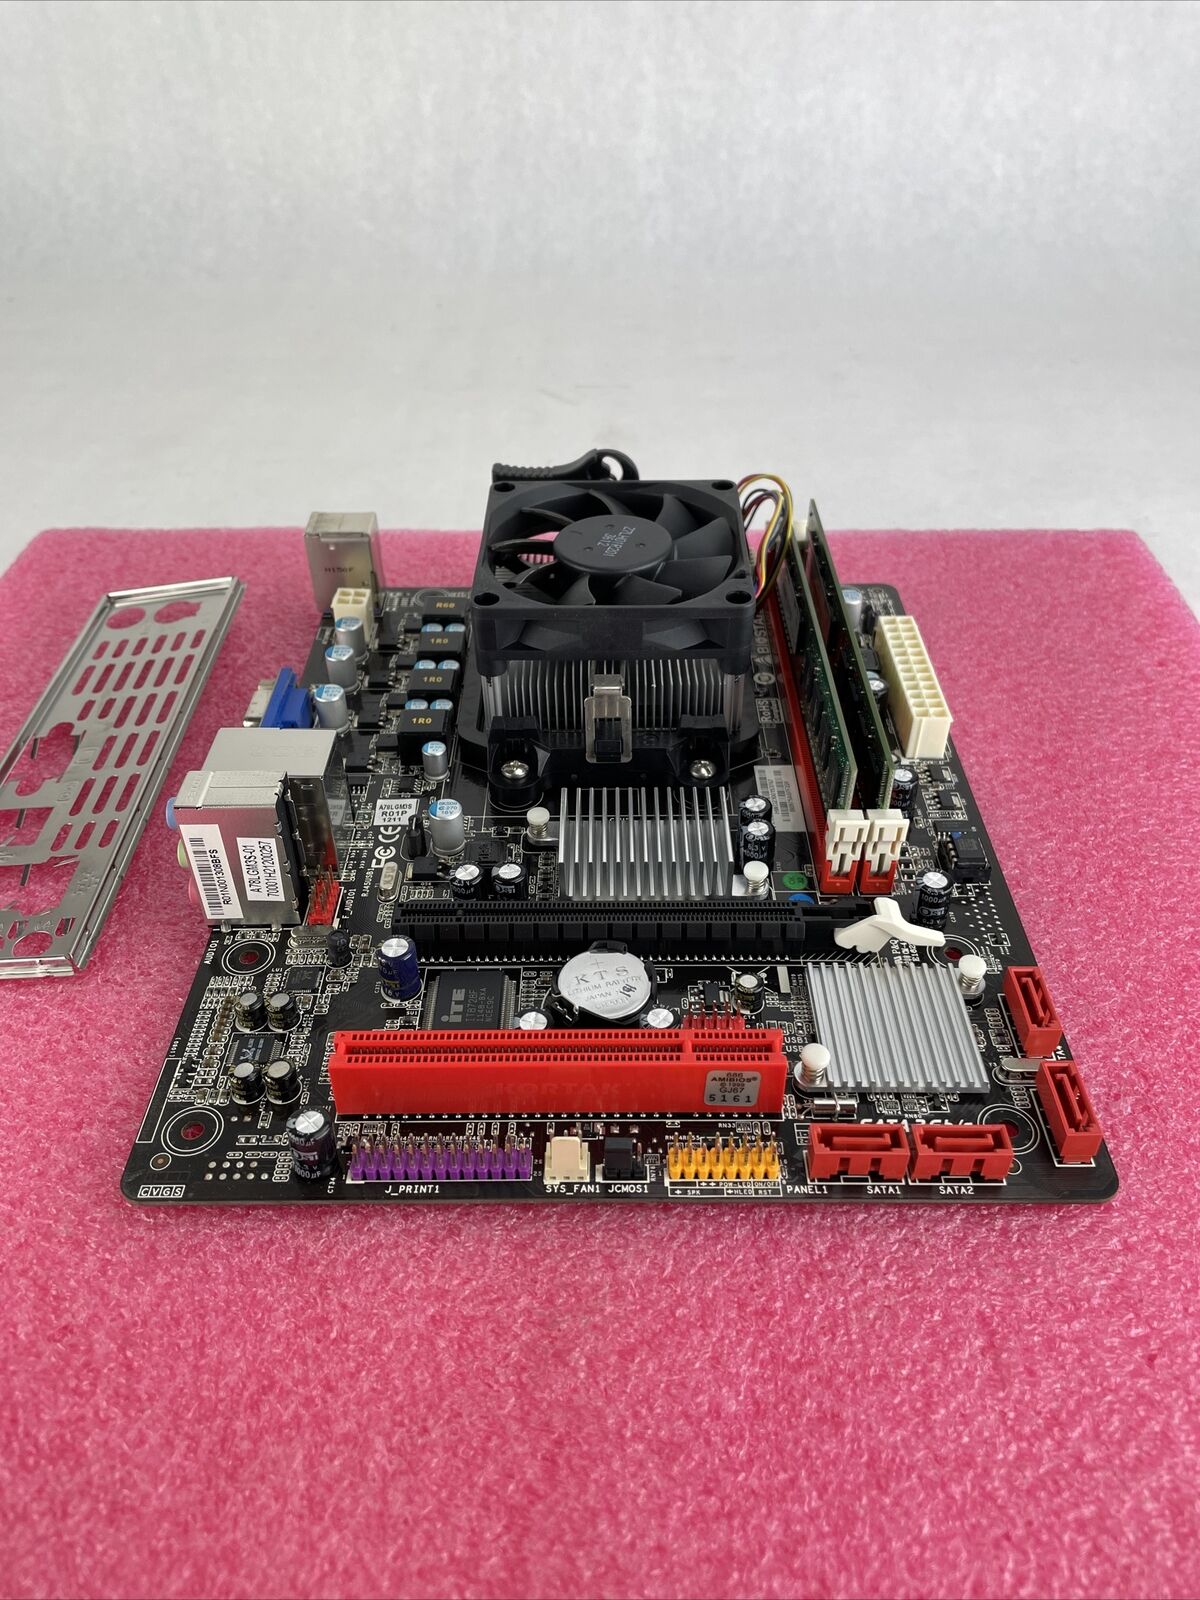 Biostar A960G+ Motherboard AMD Athlon II x2 270 3.4GHz 8GB RAM w/Shield